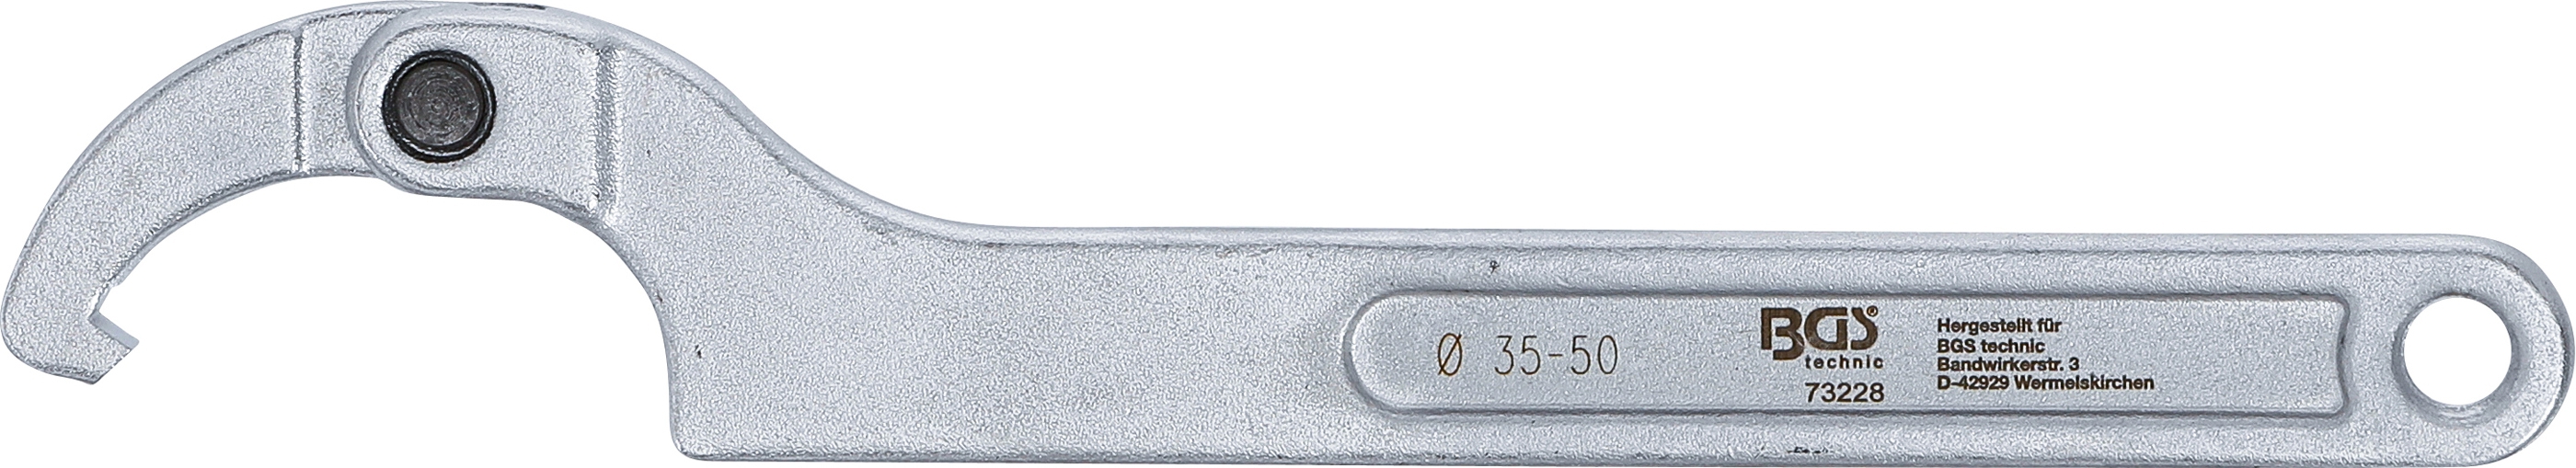 Gelenk-Hakenschlüssel mit Nase | 35 - 50 mm